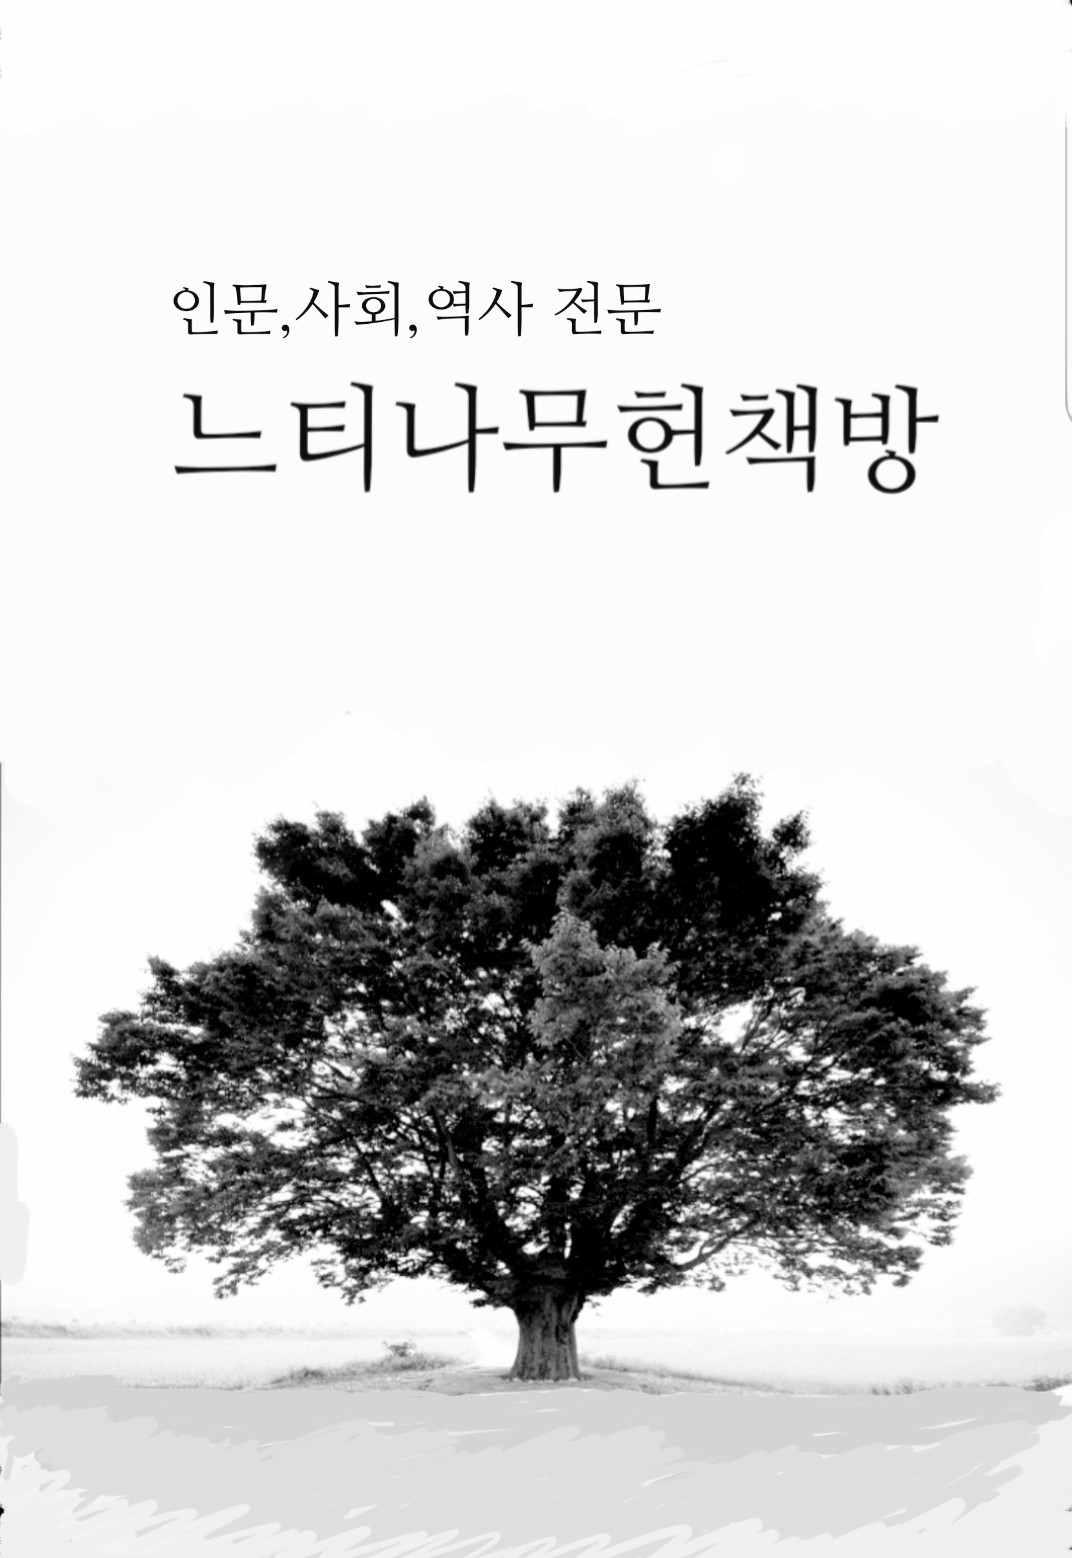 신학과 세계 제15호 - 김철손교수 고희기념호 (알기1코너)